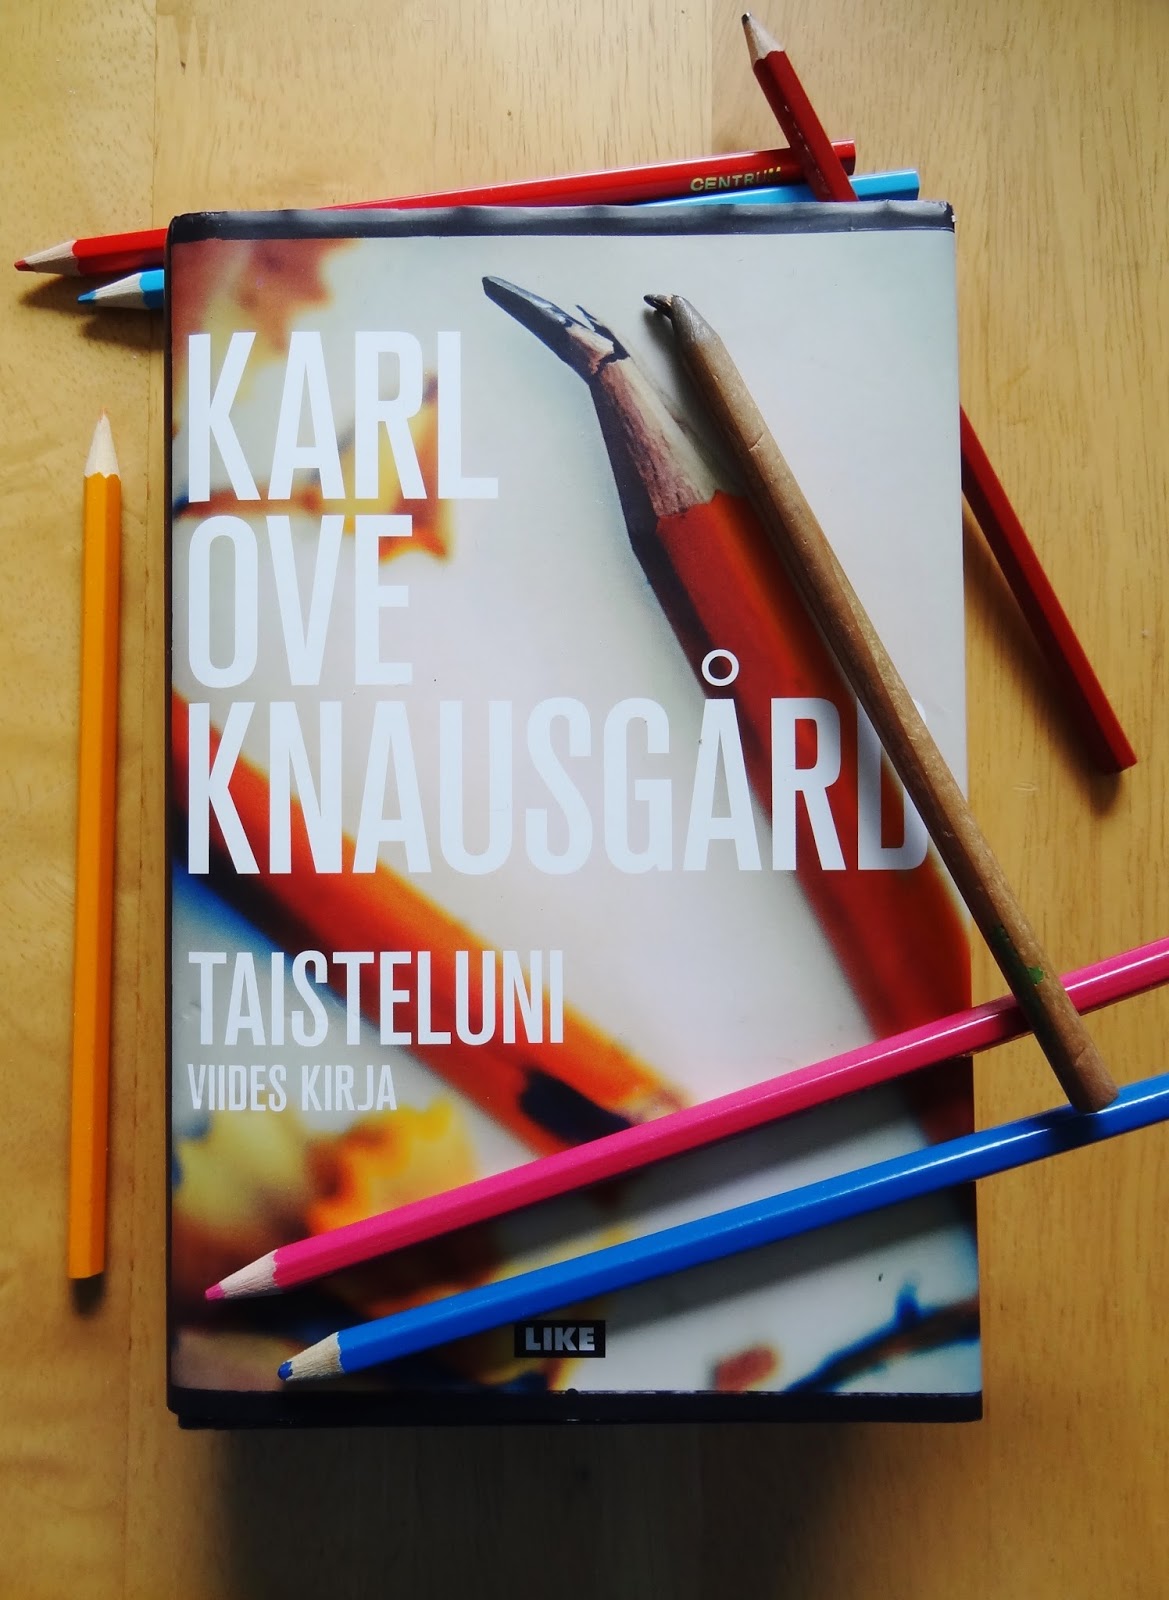 1001 kirjaa ja yksi pieni elämä: Karl Ove Knausgård: Taisteluni (viides  kirja)